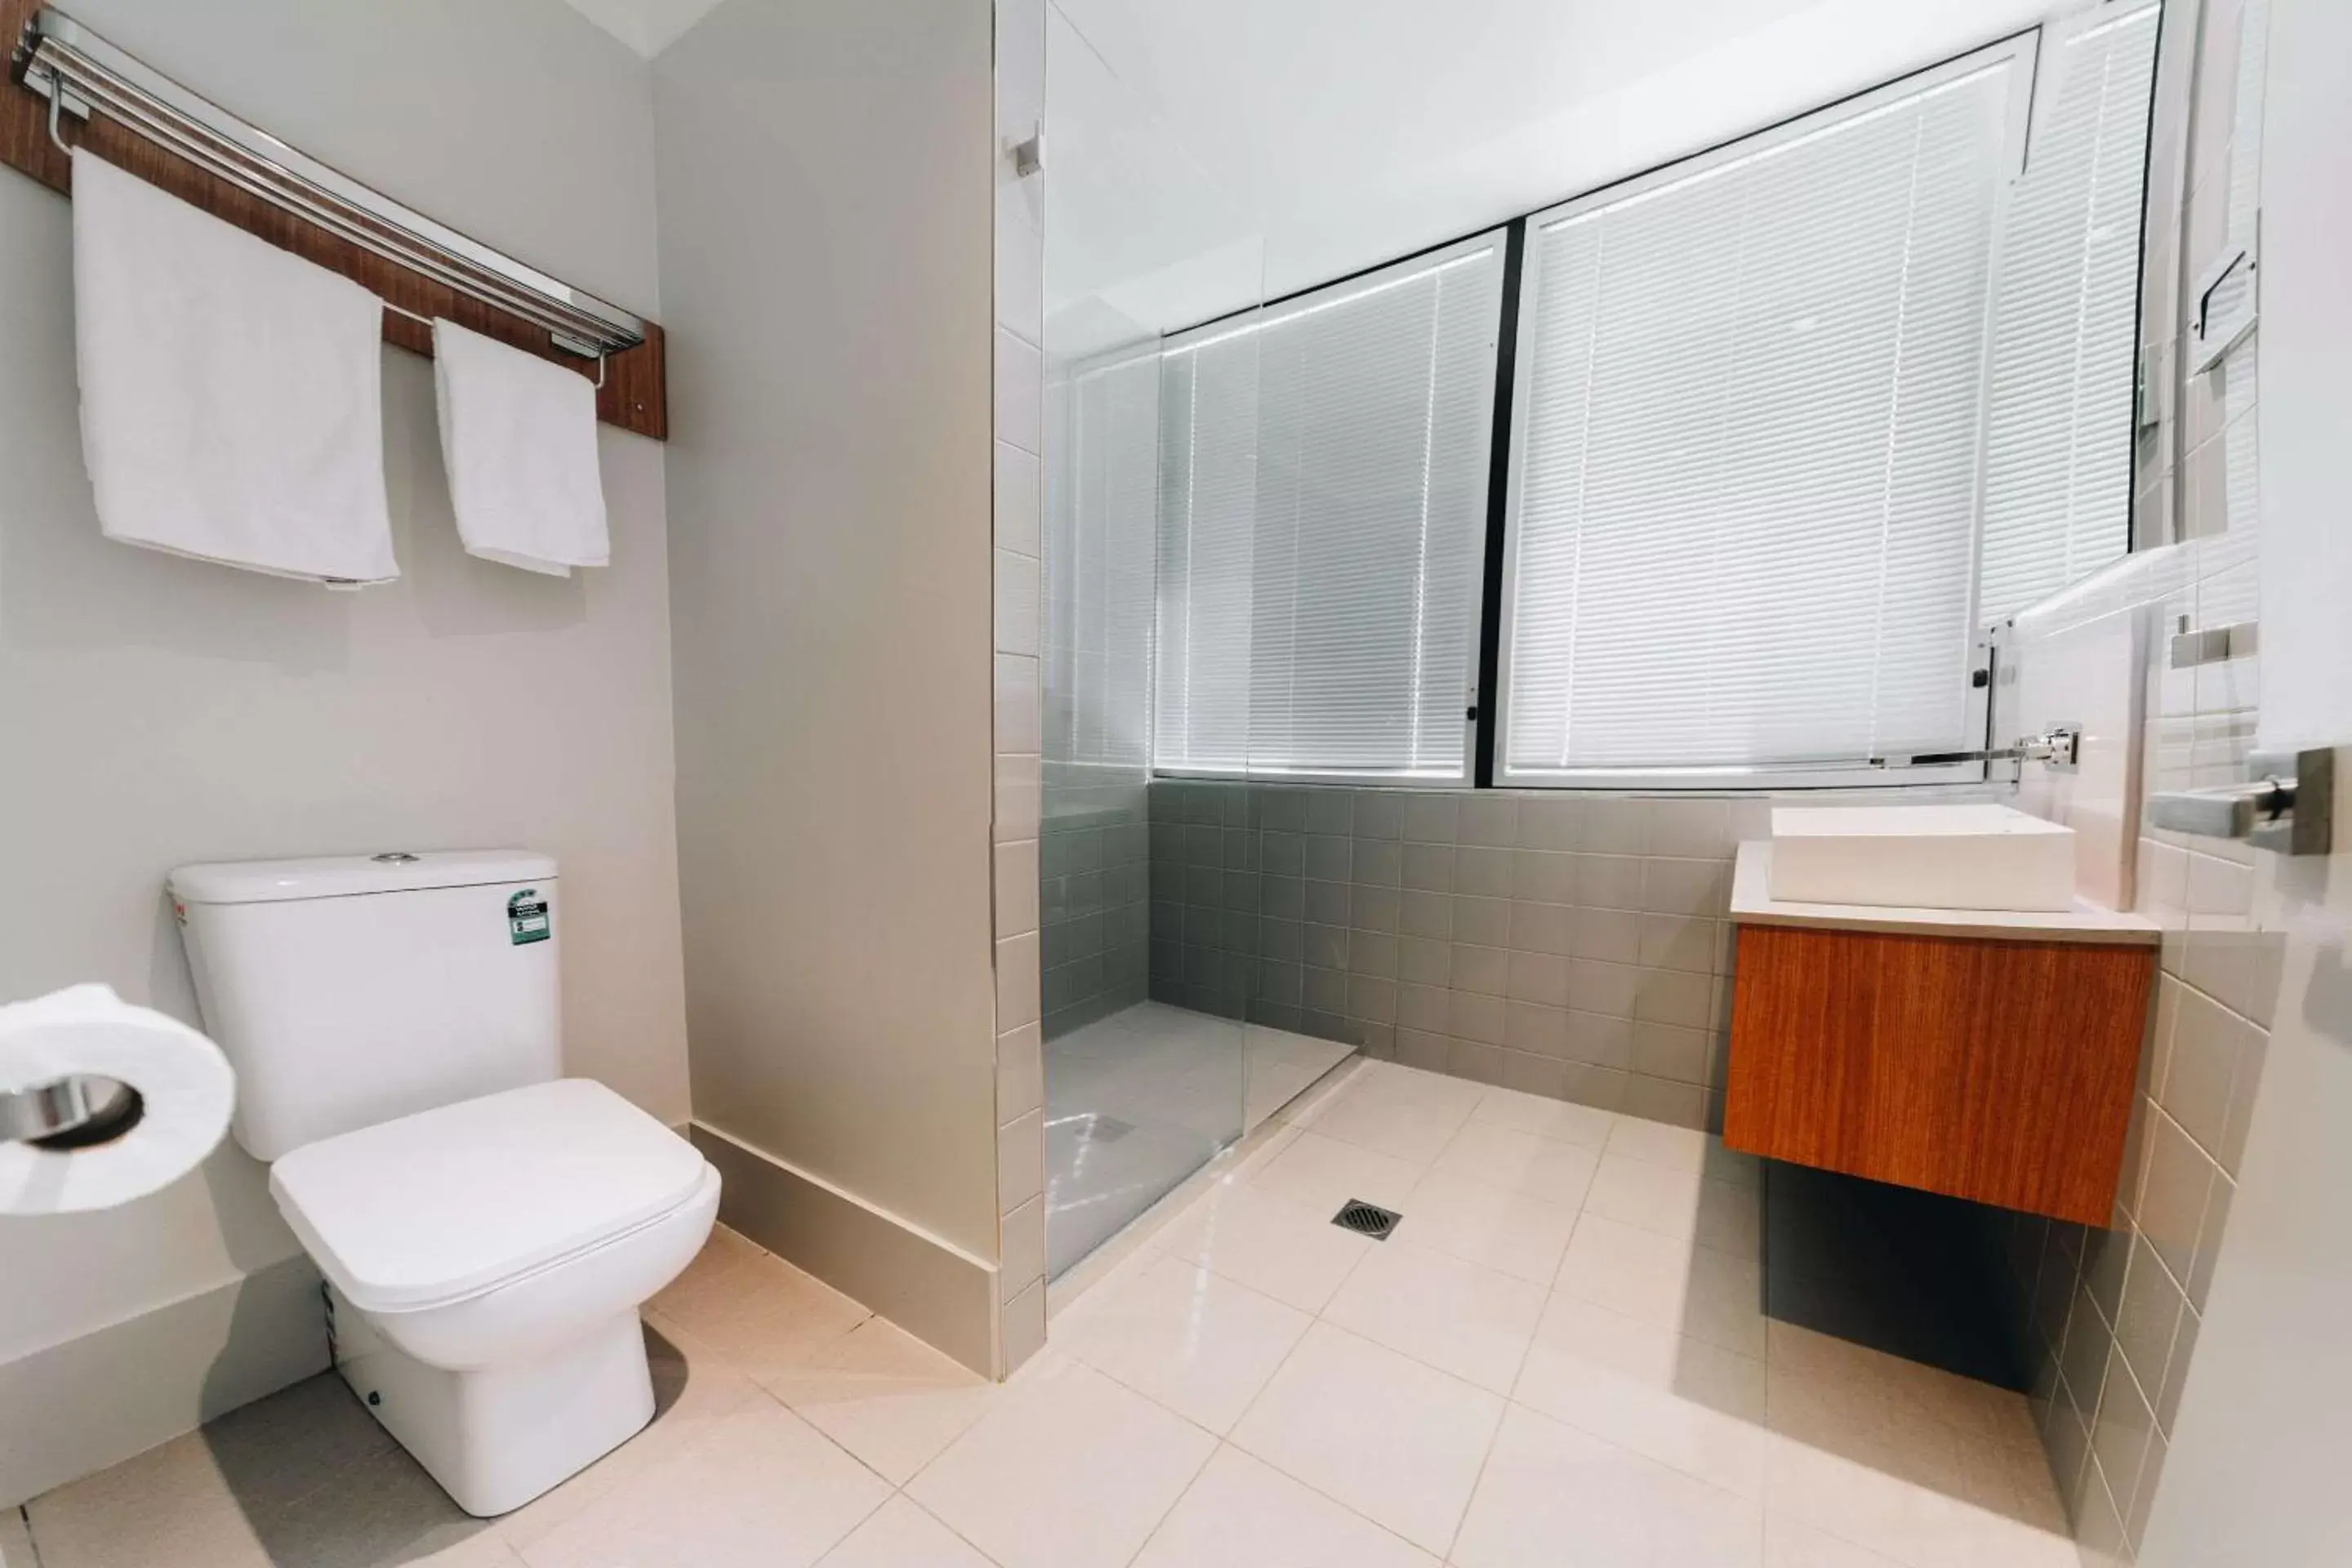 Bedroom, Bathroom in Clarion Hotel Townsville